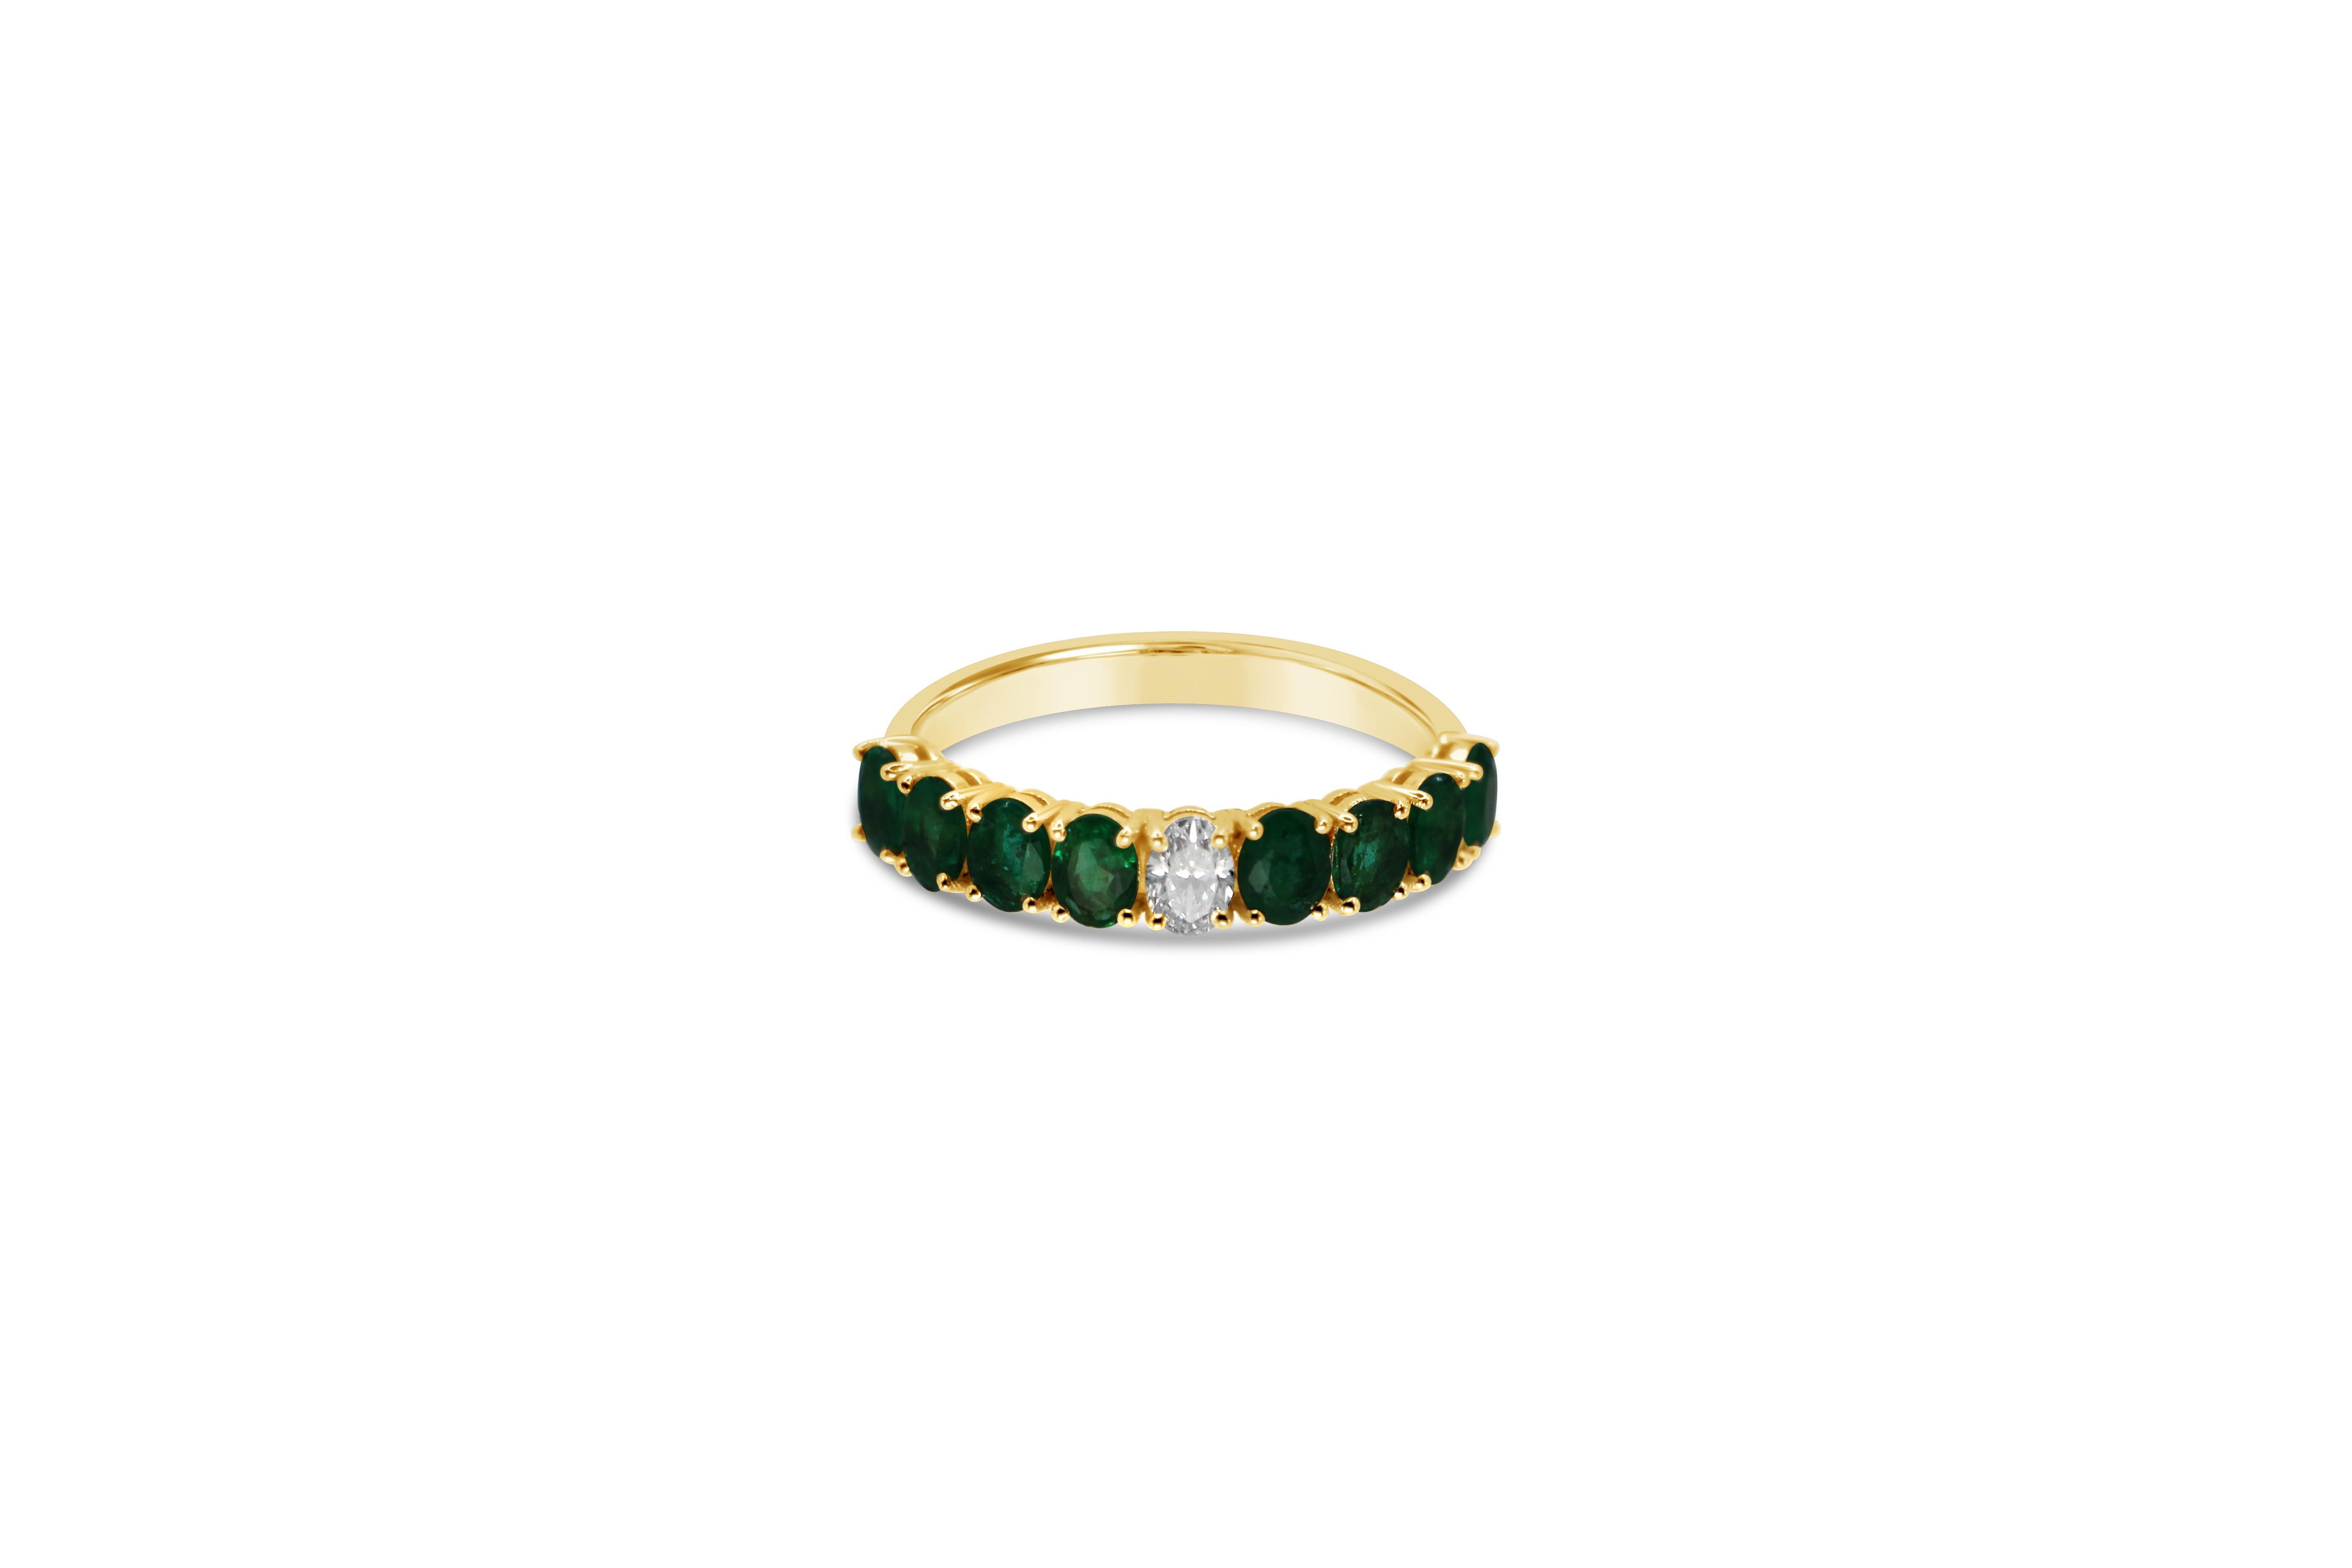 Ewigkeitsring mit grünen Smaragden im ovalen Brillantschliff und Diamant aus 18 Kt Gelbgold. Alle Steine sind in der Zackenfassung gefasst.
Die Diamanten sind 0,15ct und die schönen grünen Smaragde sind 1,22ct.
Ein zartes, modernes und stilvolles